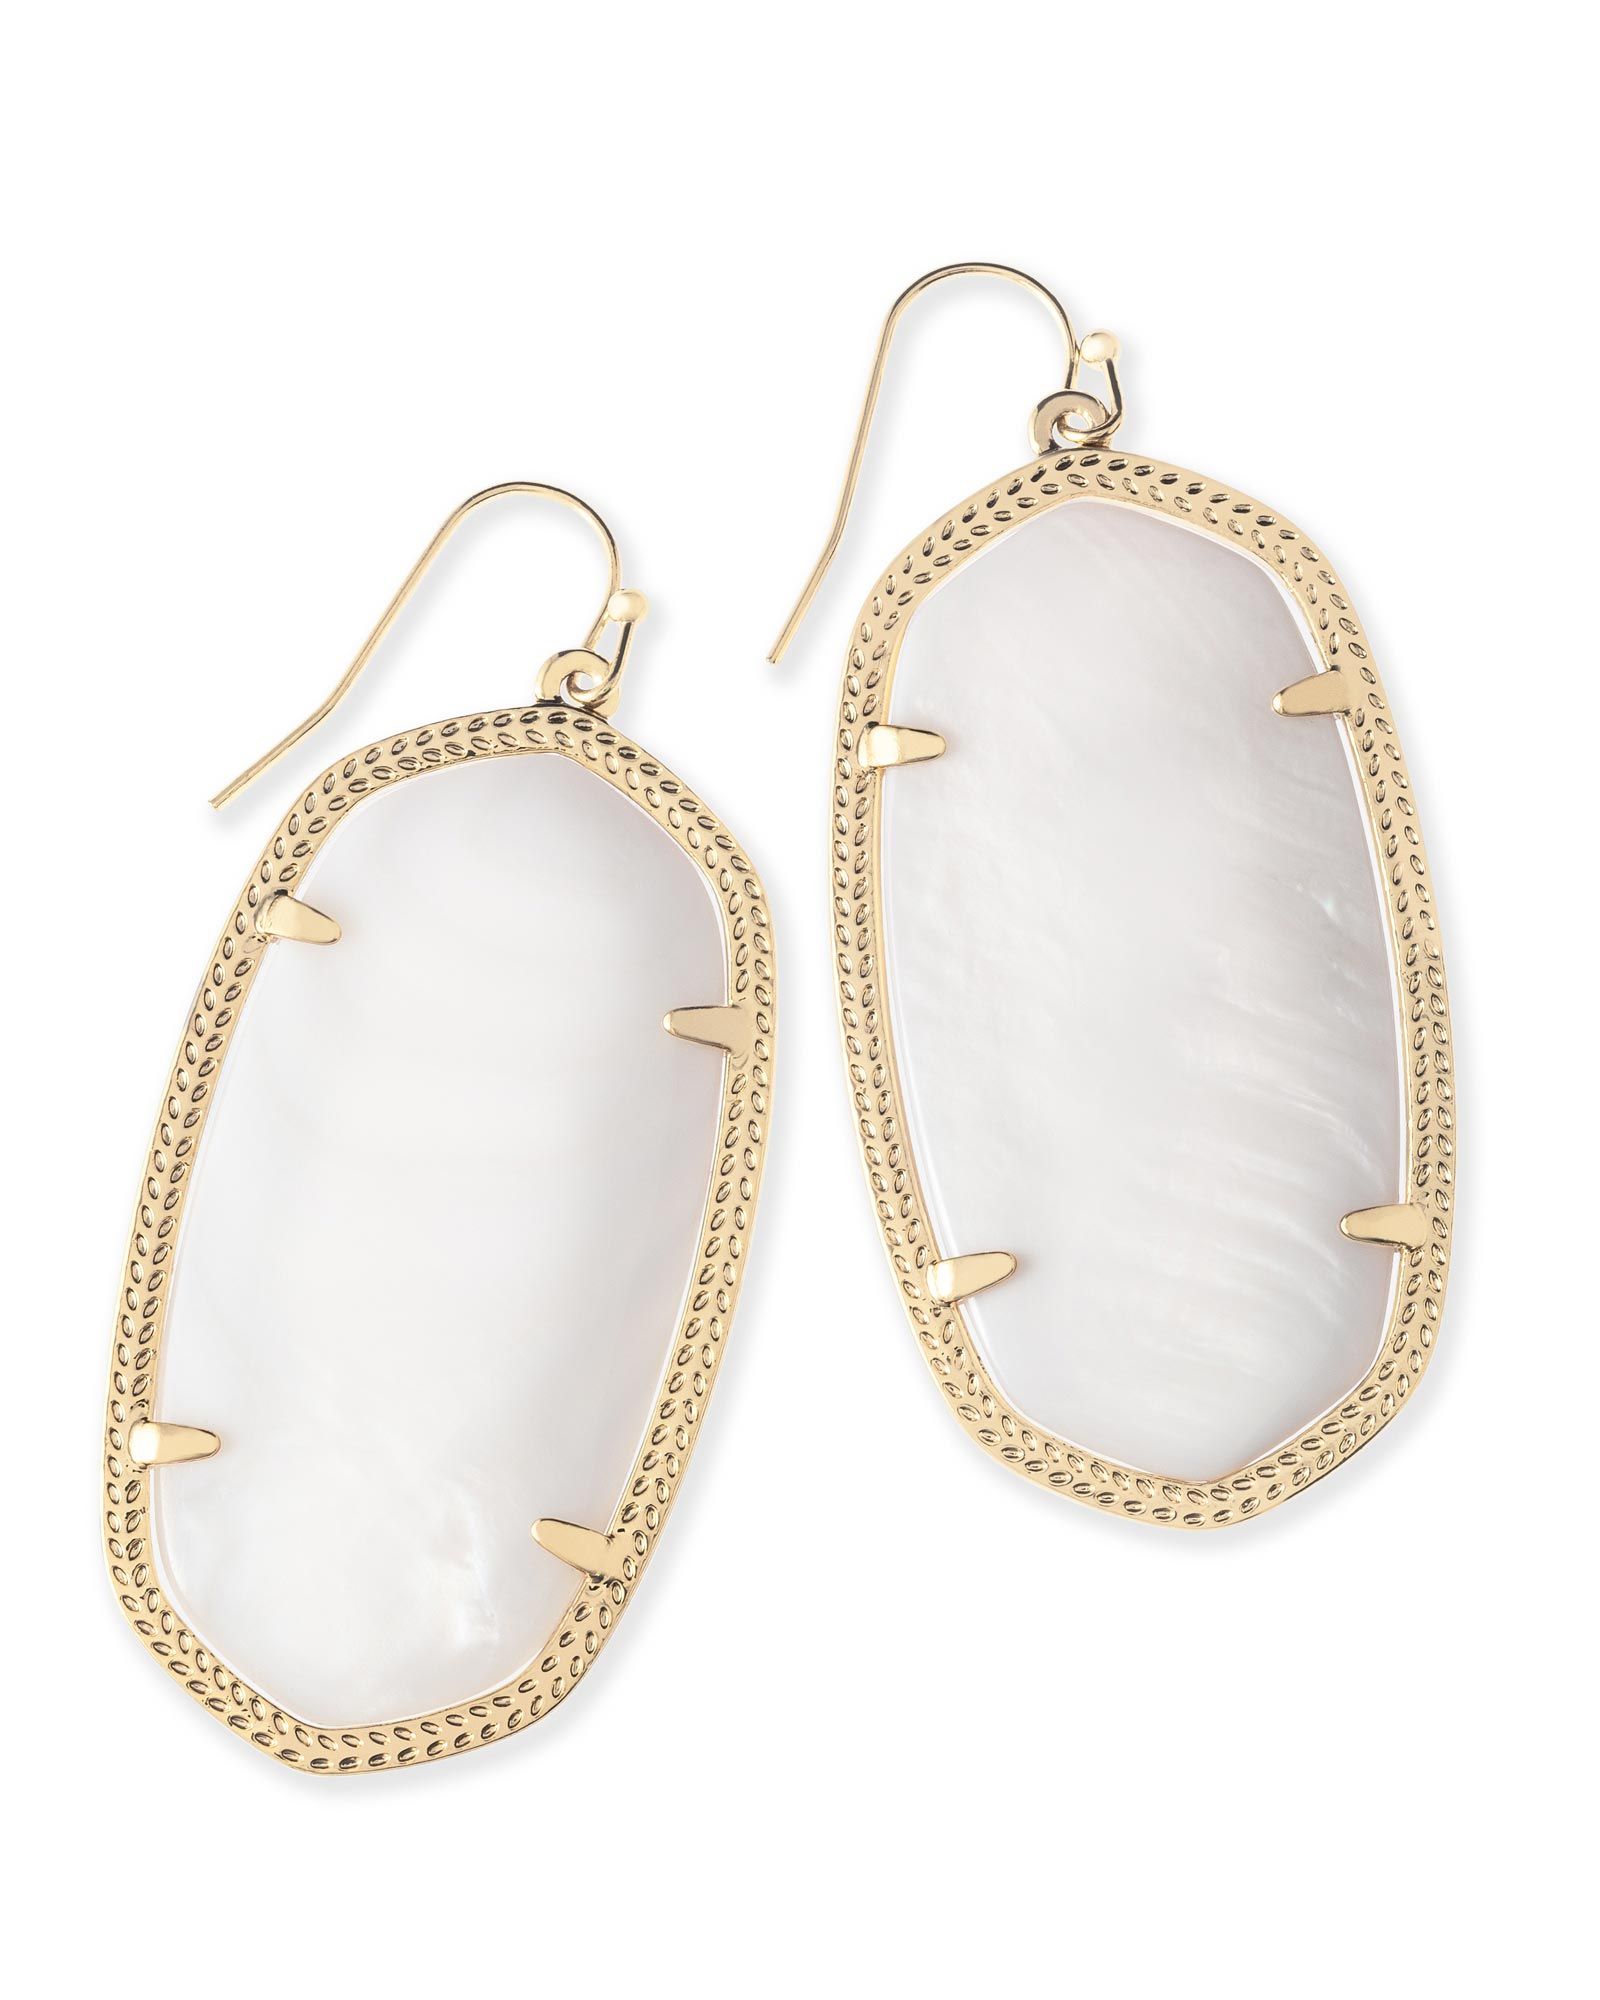 Danielle Gold Earrings in White Pearl | Kendra Scott